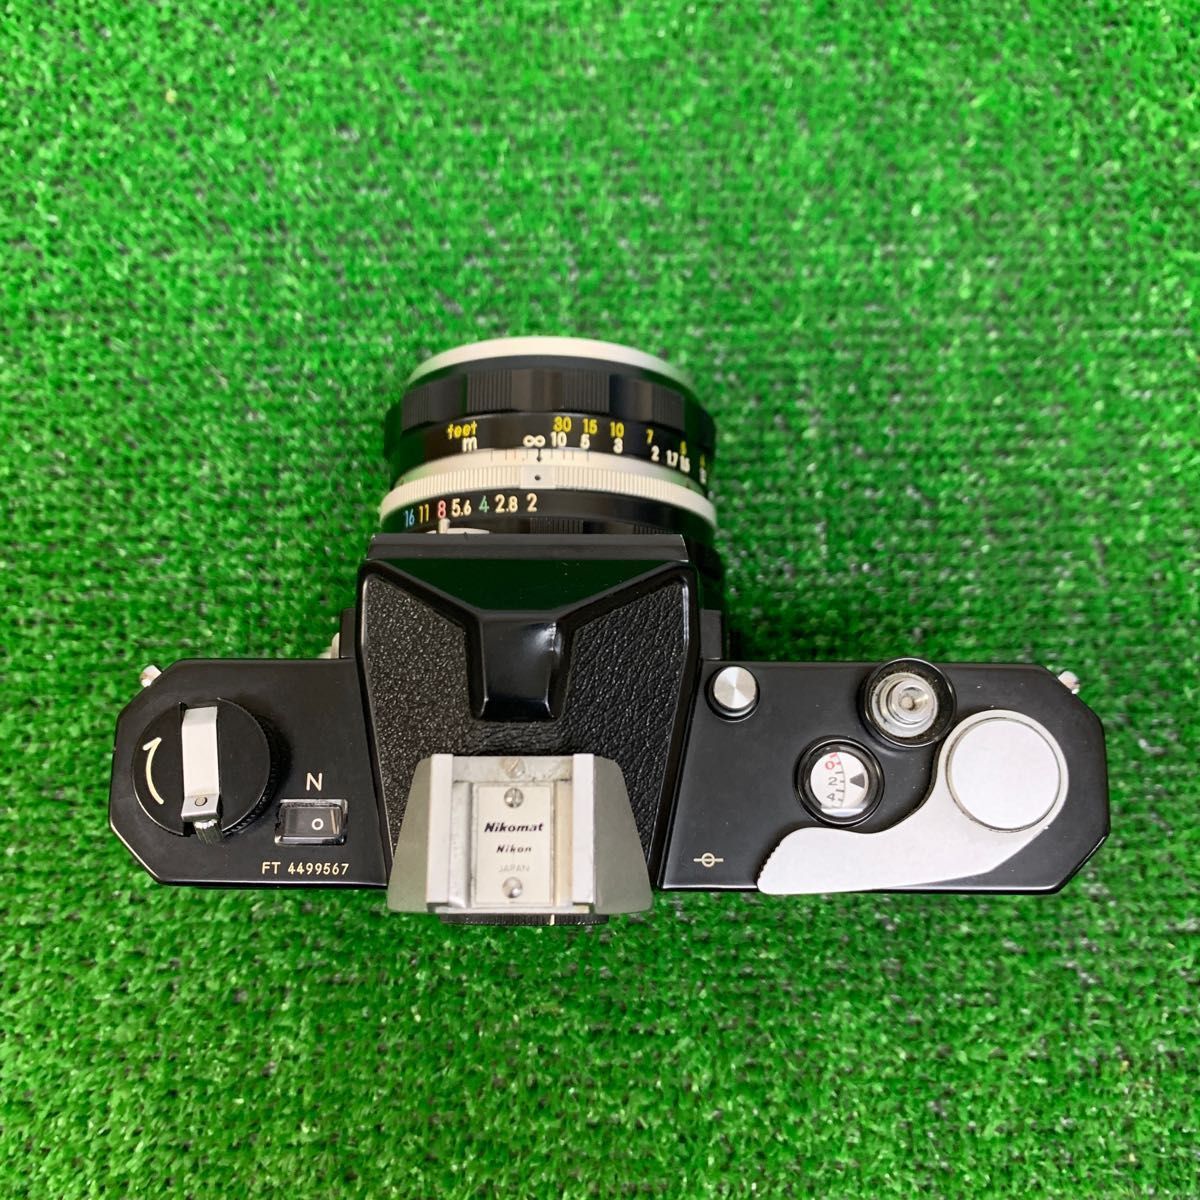 Nikon ニコマート FT レンズ付属 - フィルムカメラ